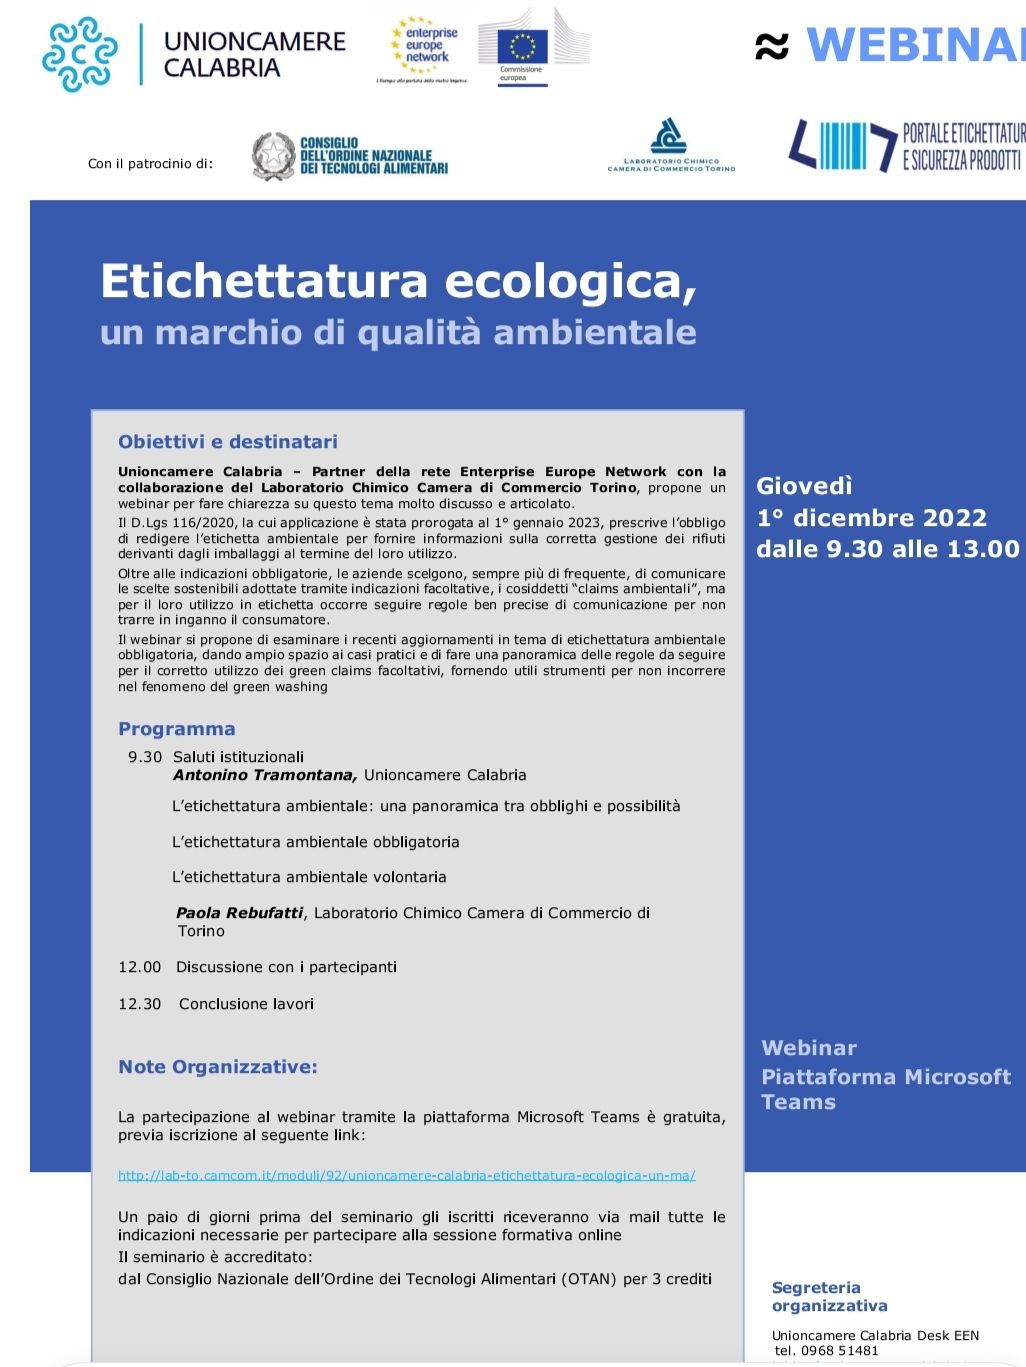 Webinar "Etichettatura ecologica, un marchio di qualità ambientale" - 1 dicembre 2022 ore 9.30-13.00